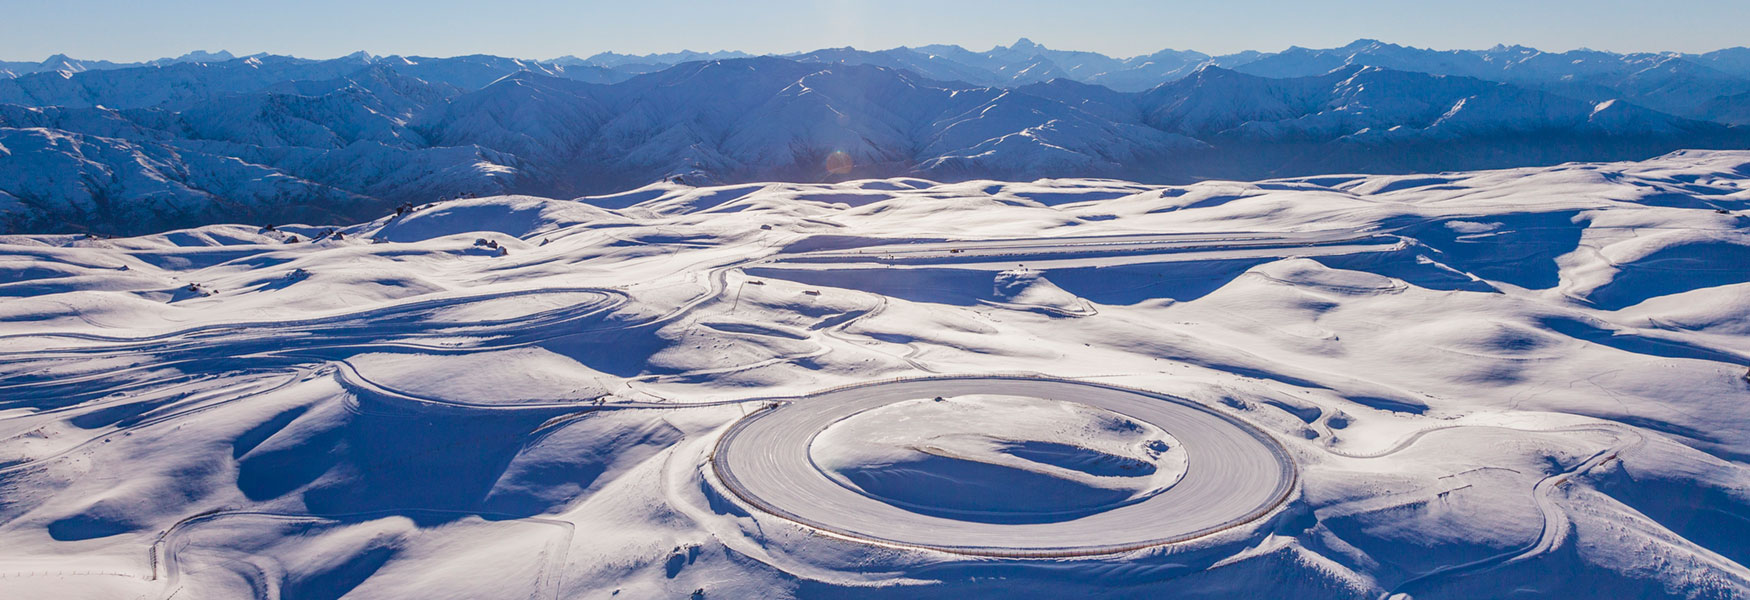 Snow & Ice Circles